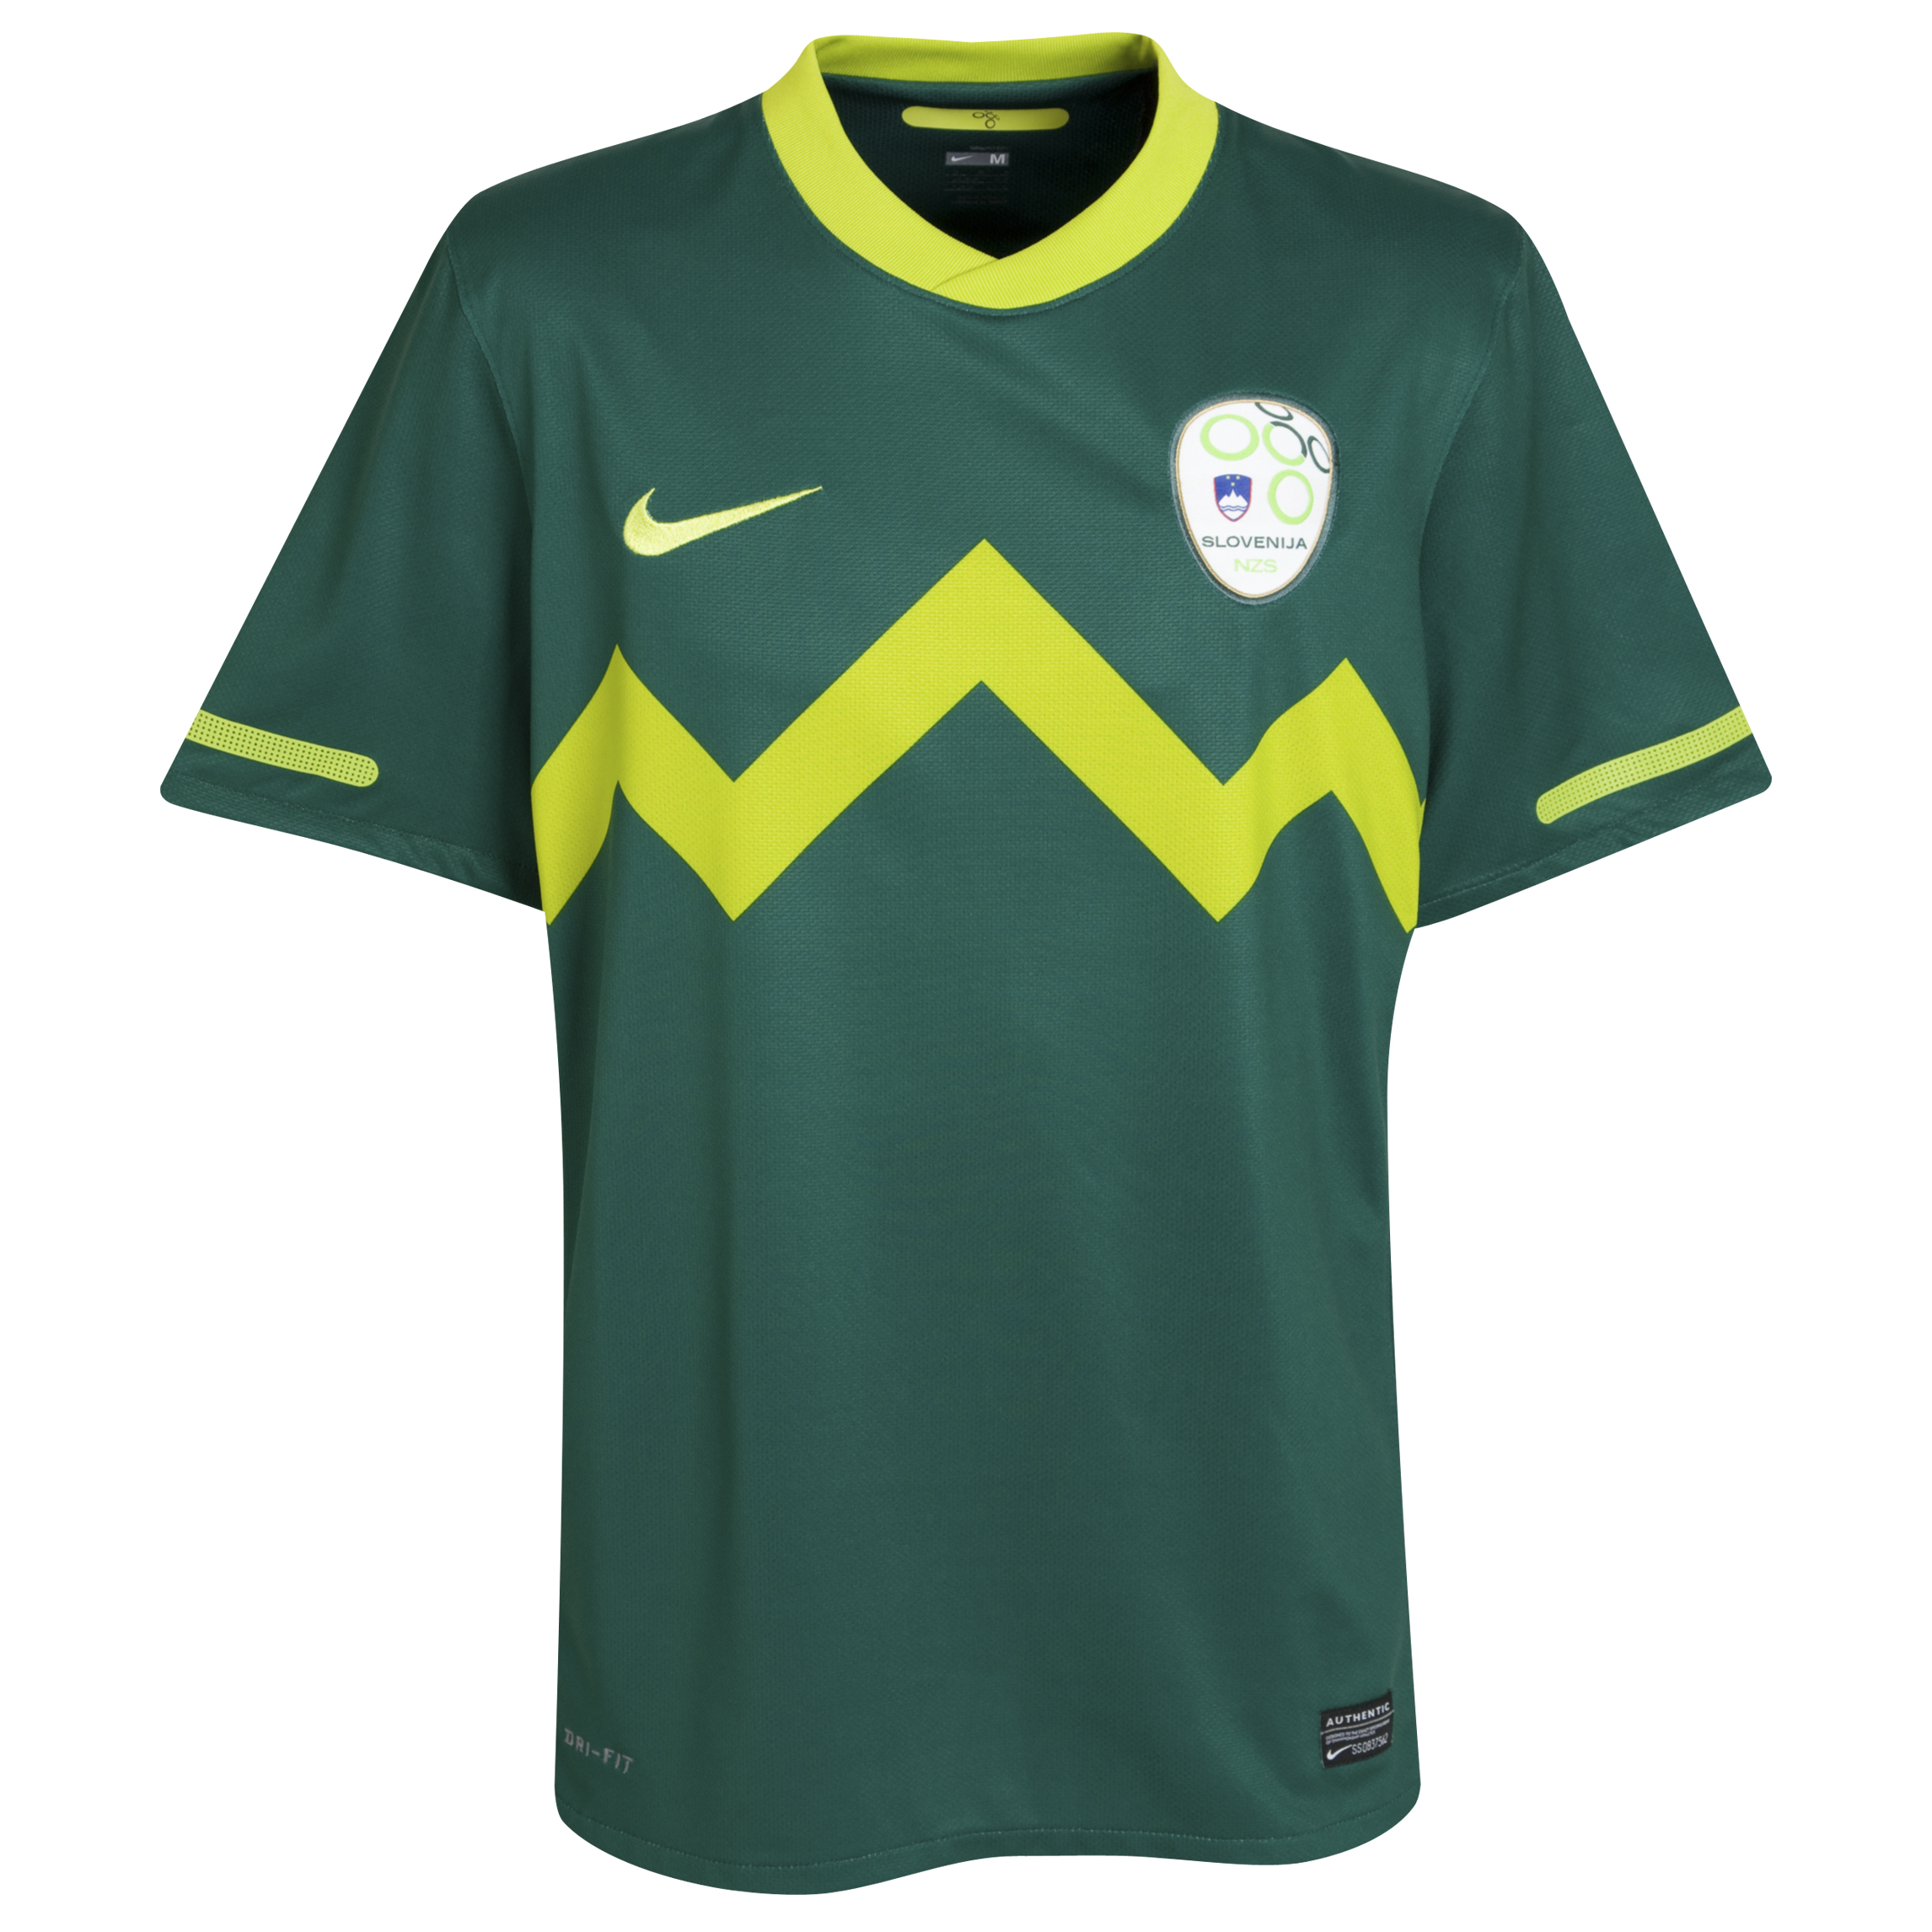 الملابس الرسمية لكأس العالم 2010 Kb-69731